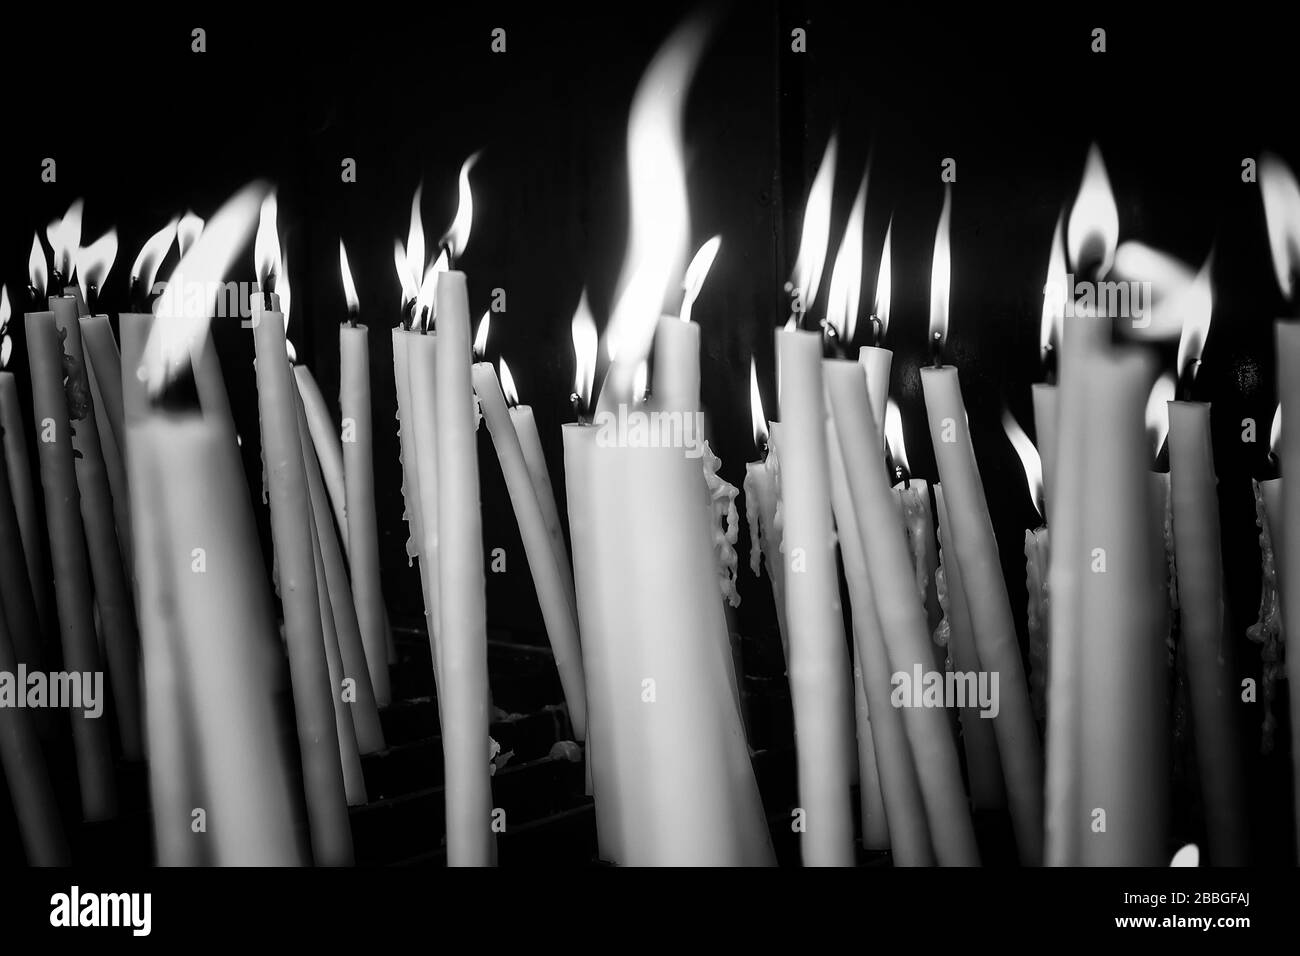 Des bougies allumées dans la chapelle de Lourdes, symboles religieux et le terrorisme Banque D'Images